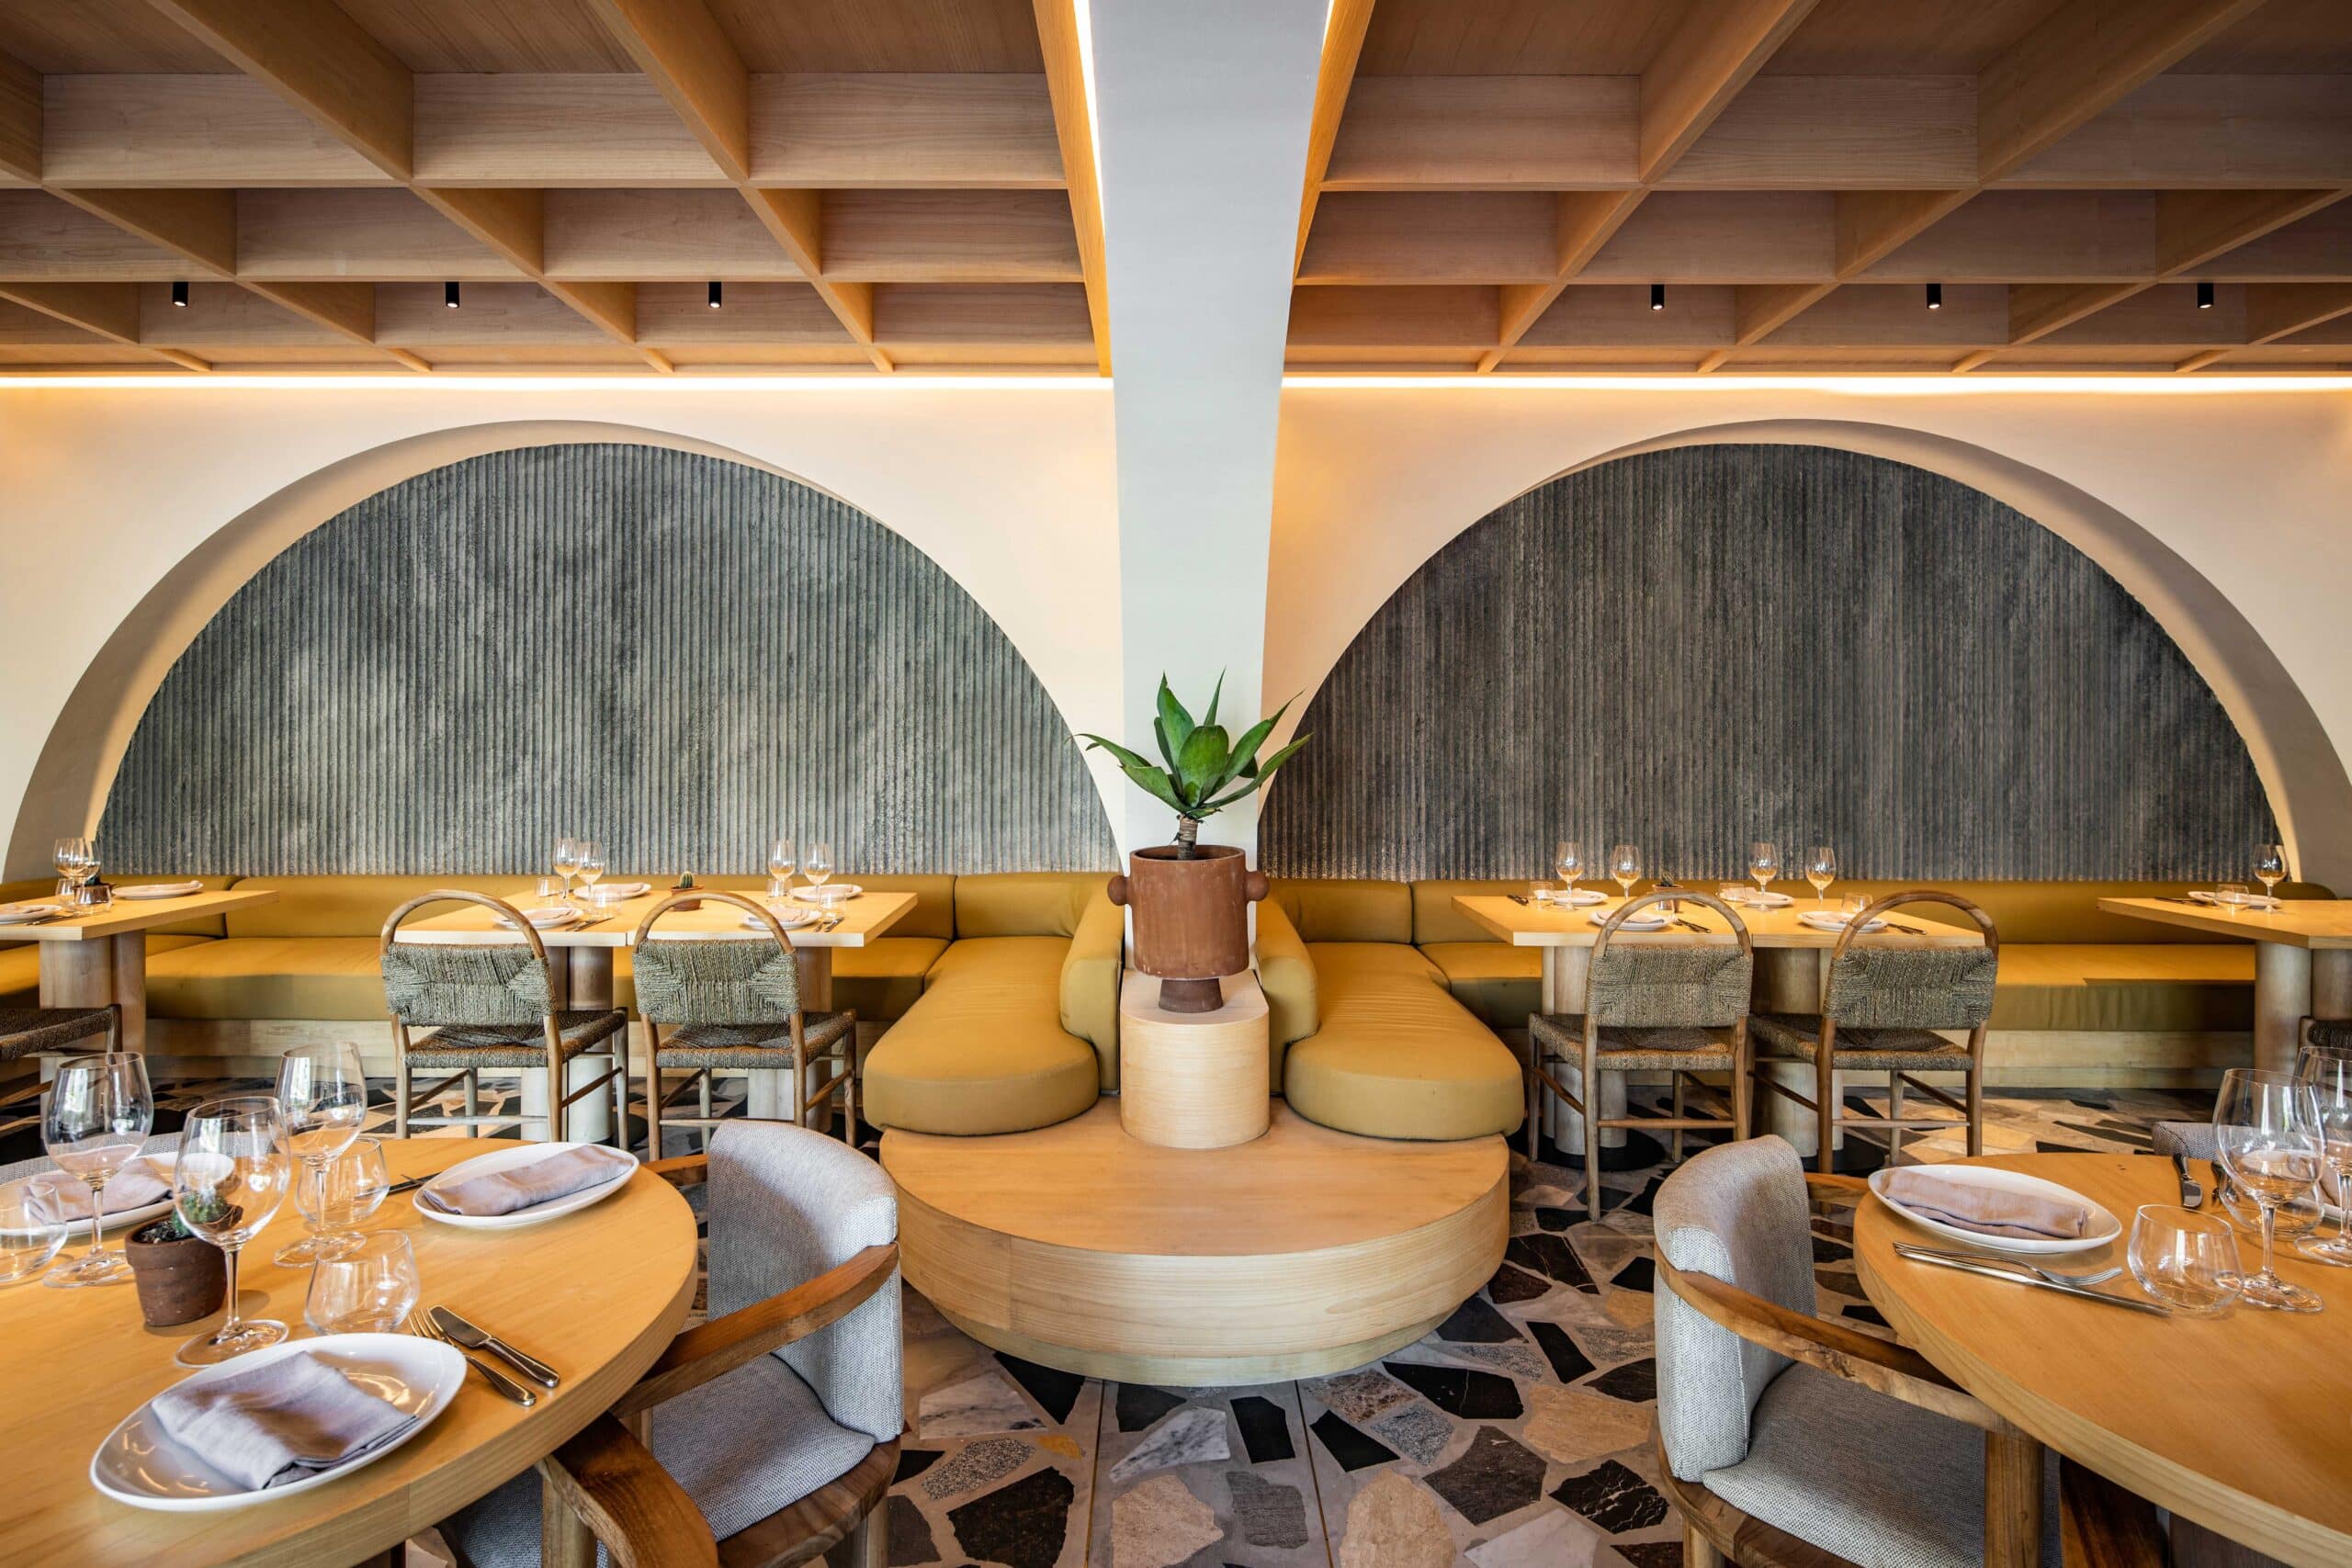 Restaurant Design - Luma Bali - Interior Design - Architecture - Architect Bali - Banquette